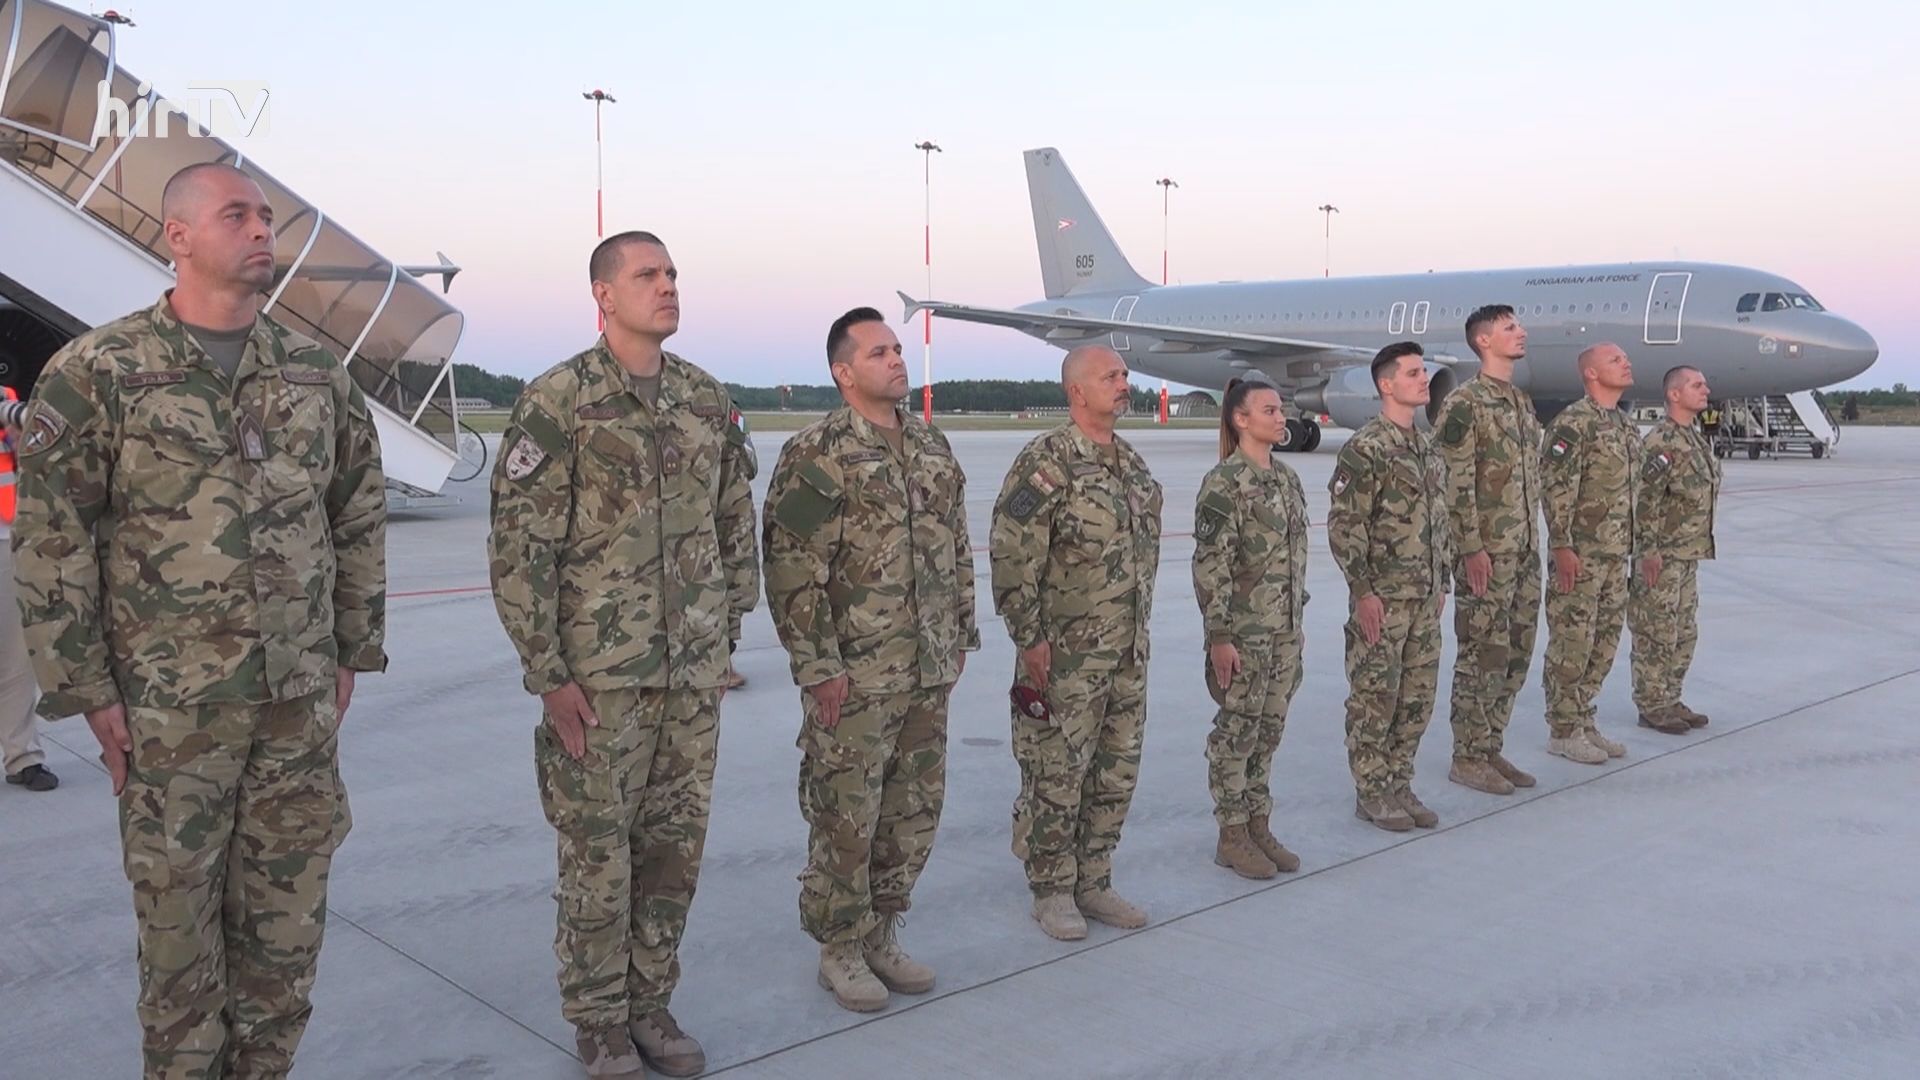 Hazaértek az utolsó katonák is Afganisztánból